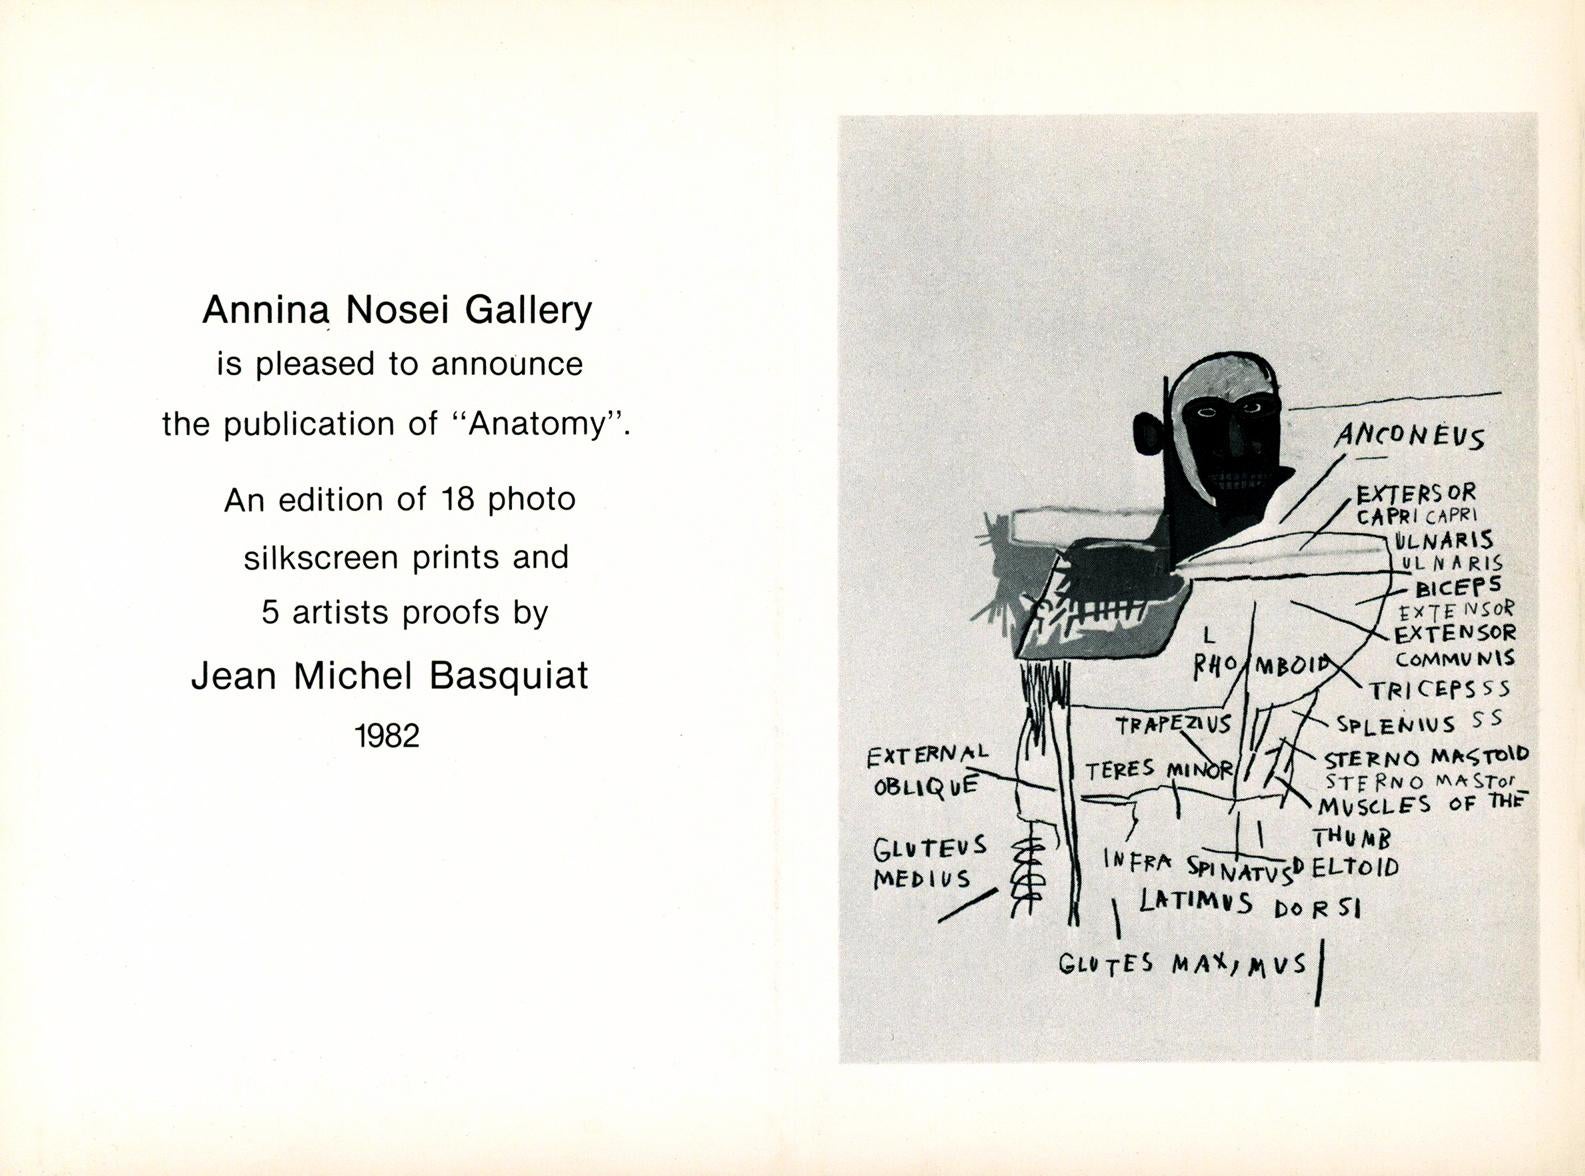 Galerie Basquiat Annina Nosei 1982 (annonce de l'anatomie de Basquiat) - Print de after Jean-Michel Basquiat